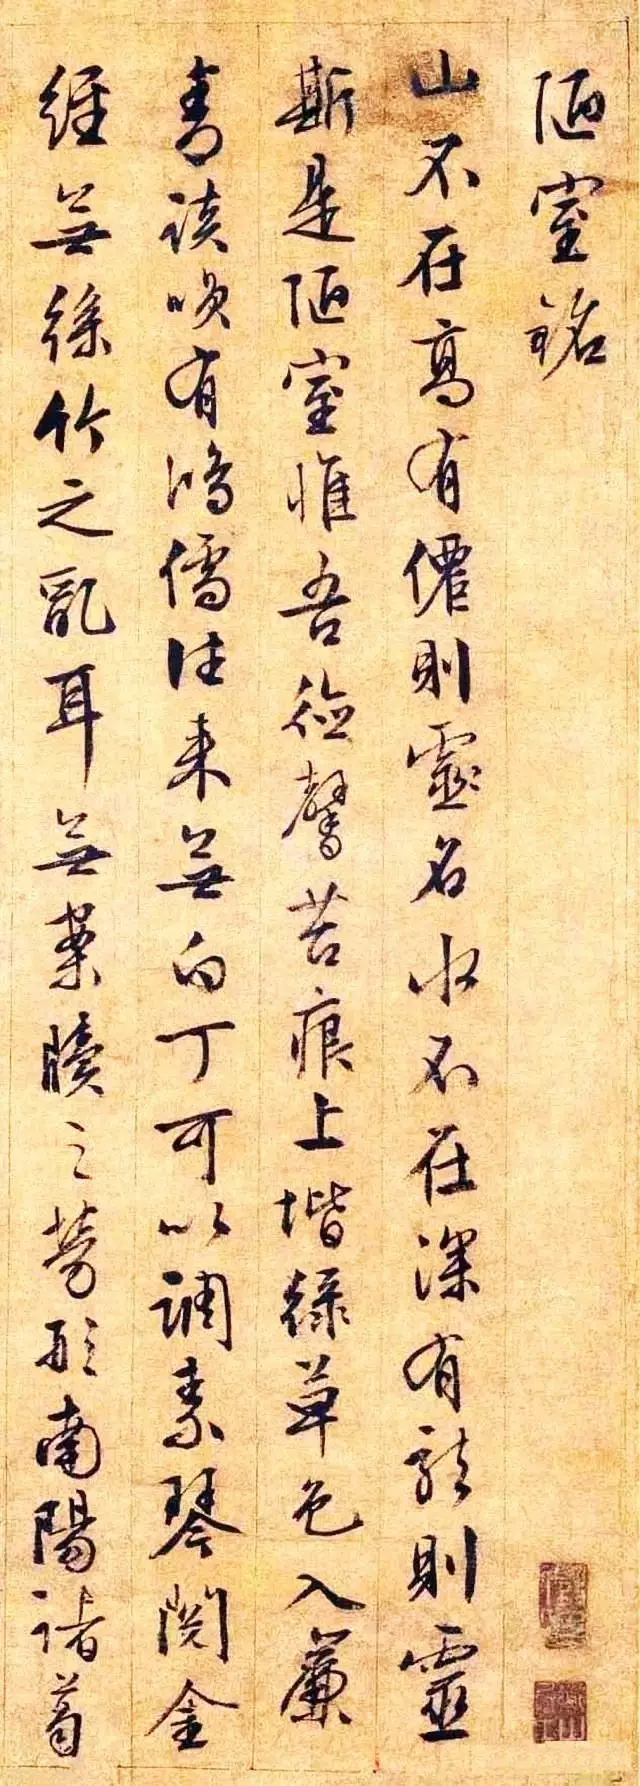 文徵明,赵孟頫,王羲之笔下的行书《陋室铭》